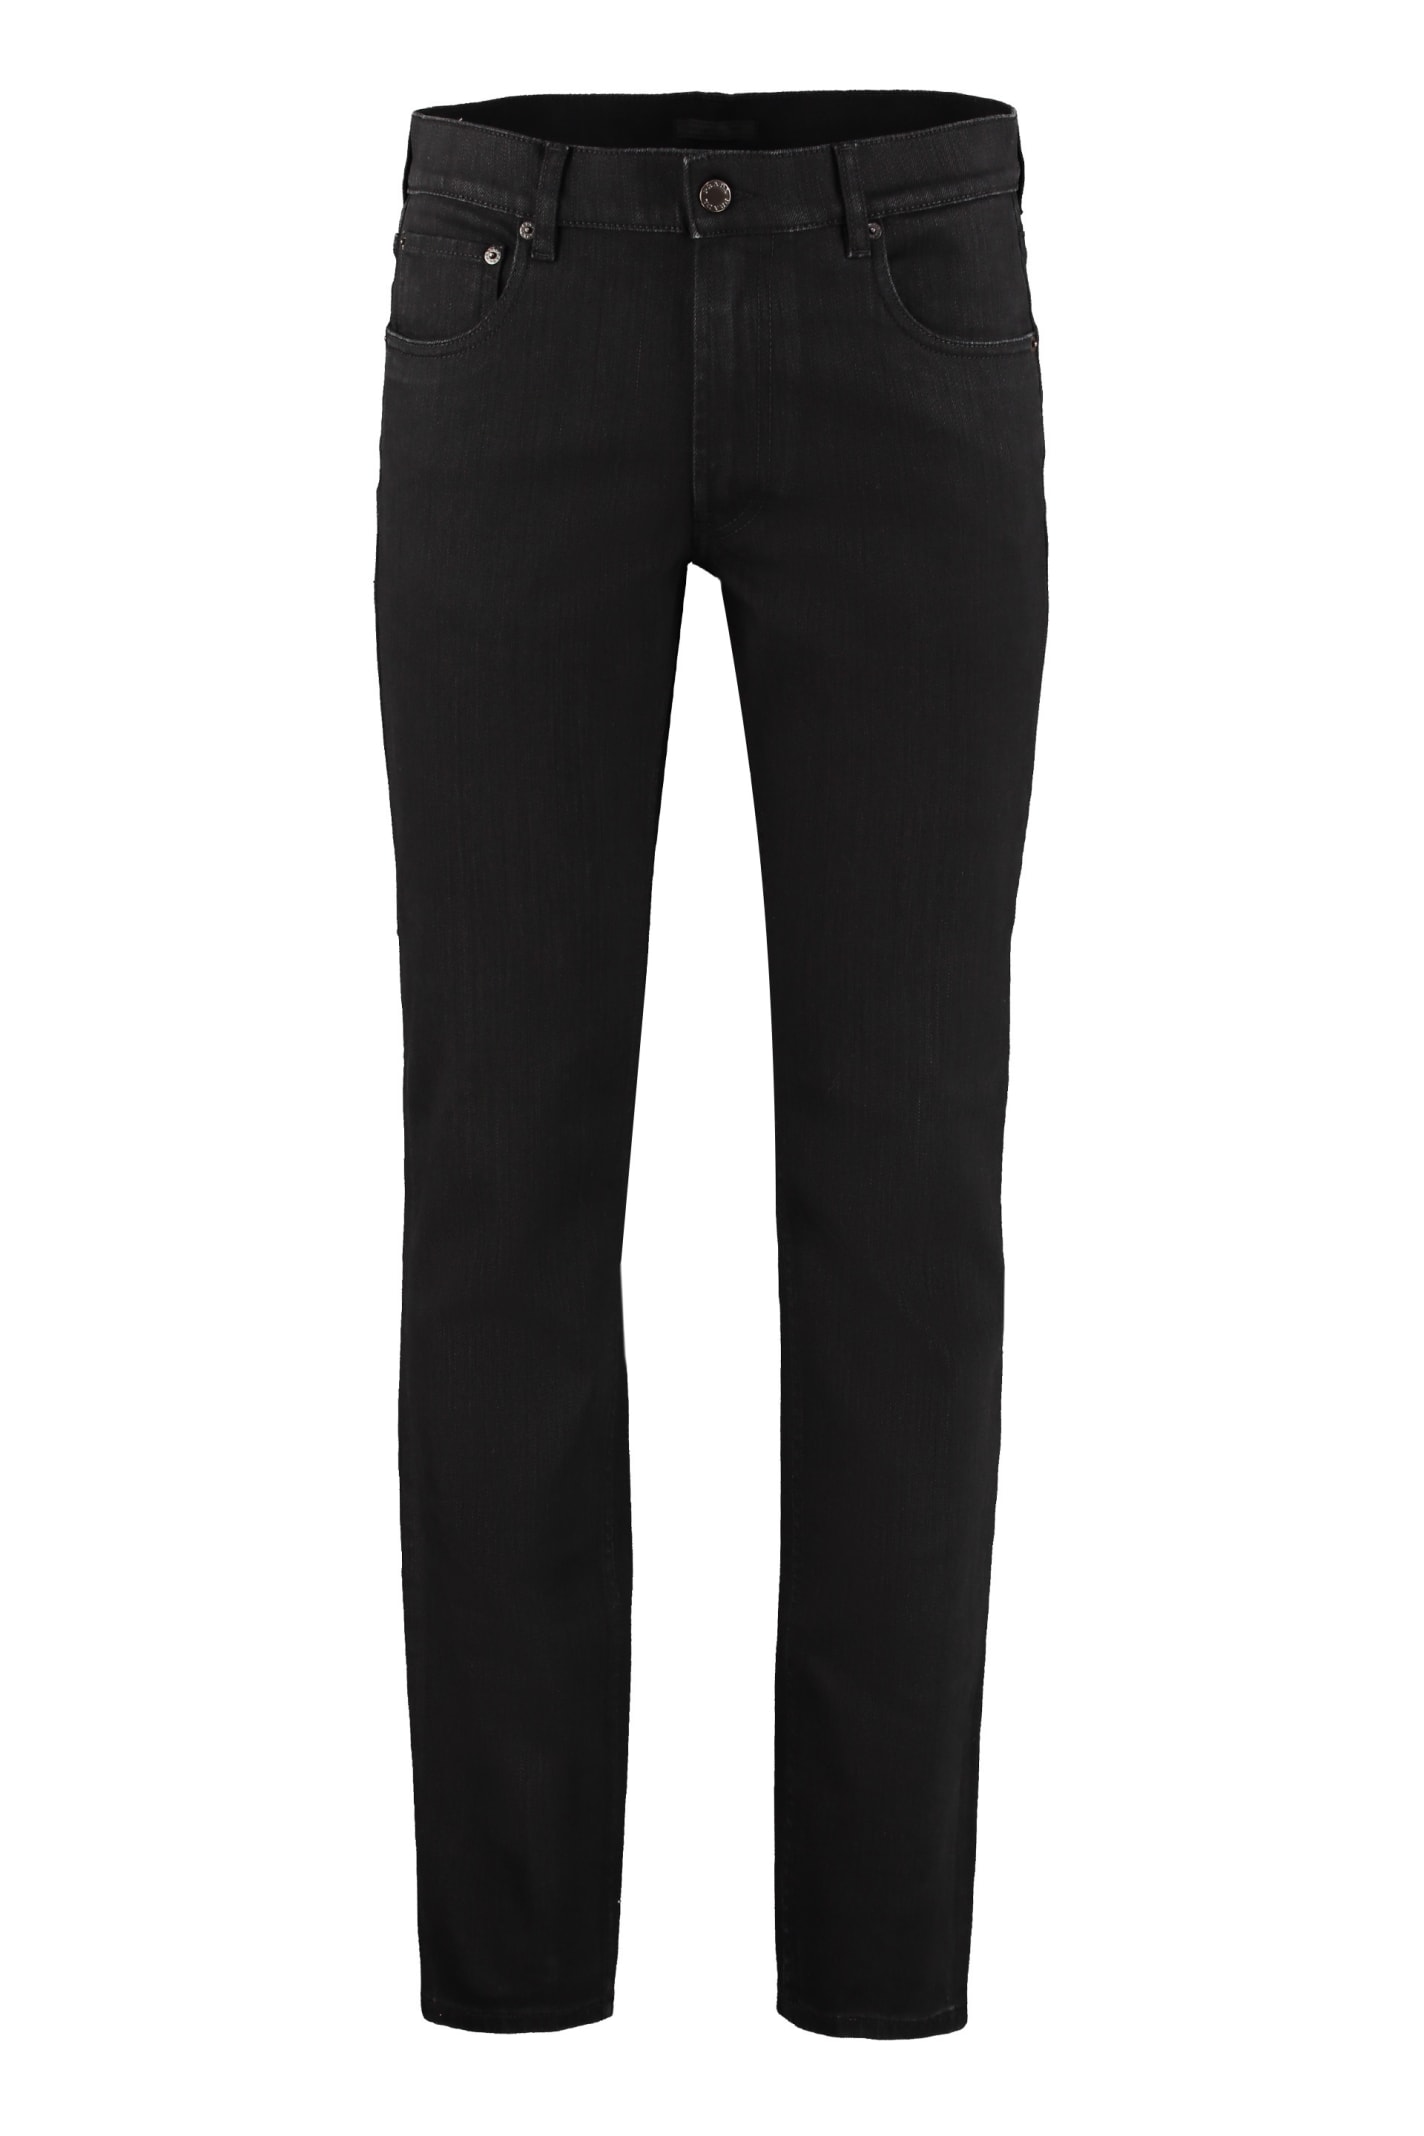 Prada Five Pocket Straight-leg Jeans In Black